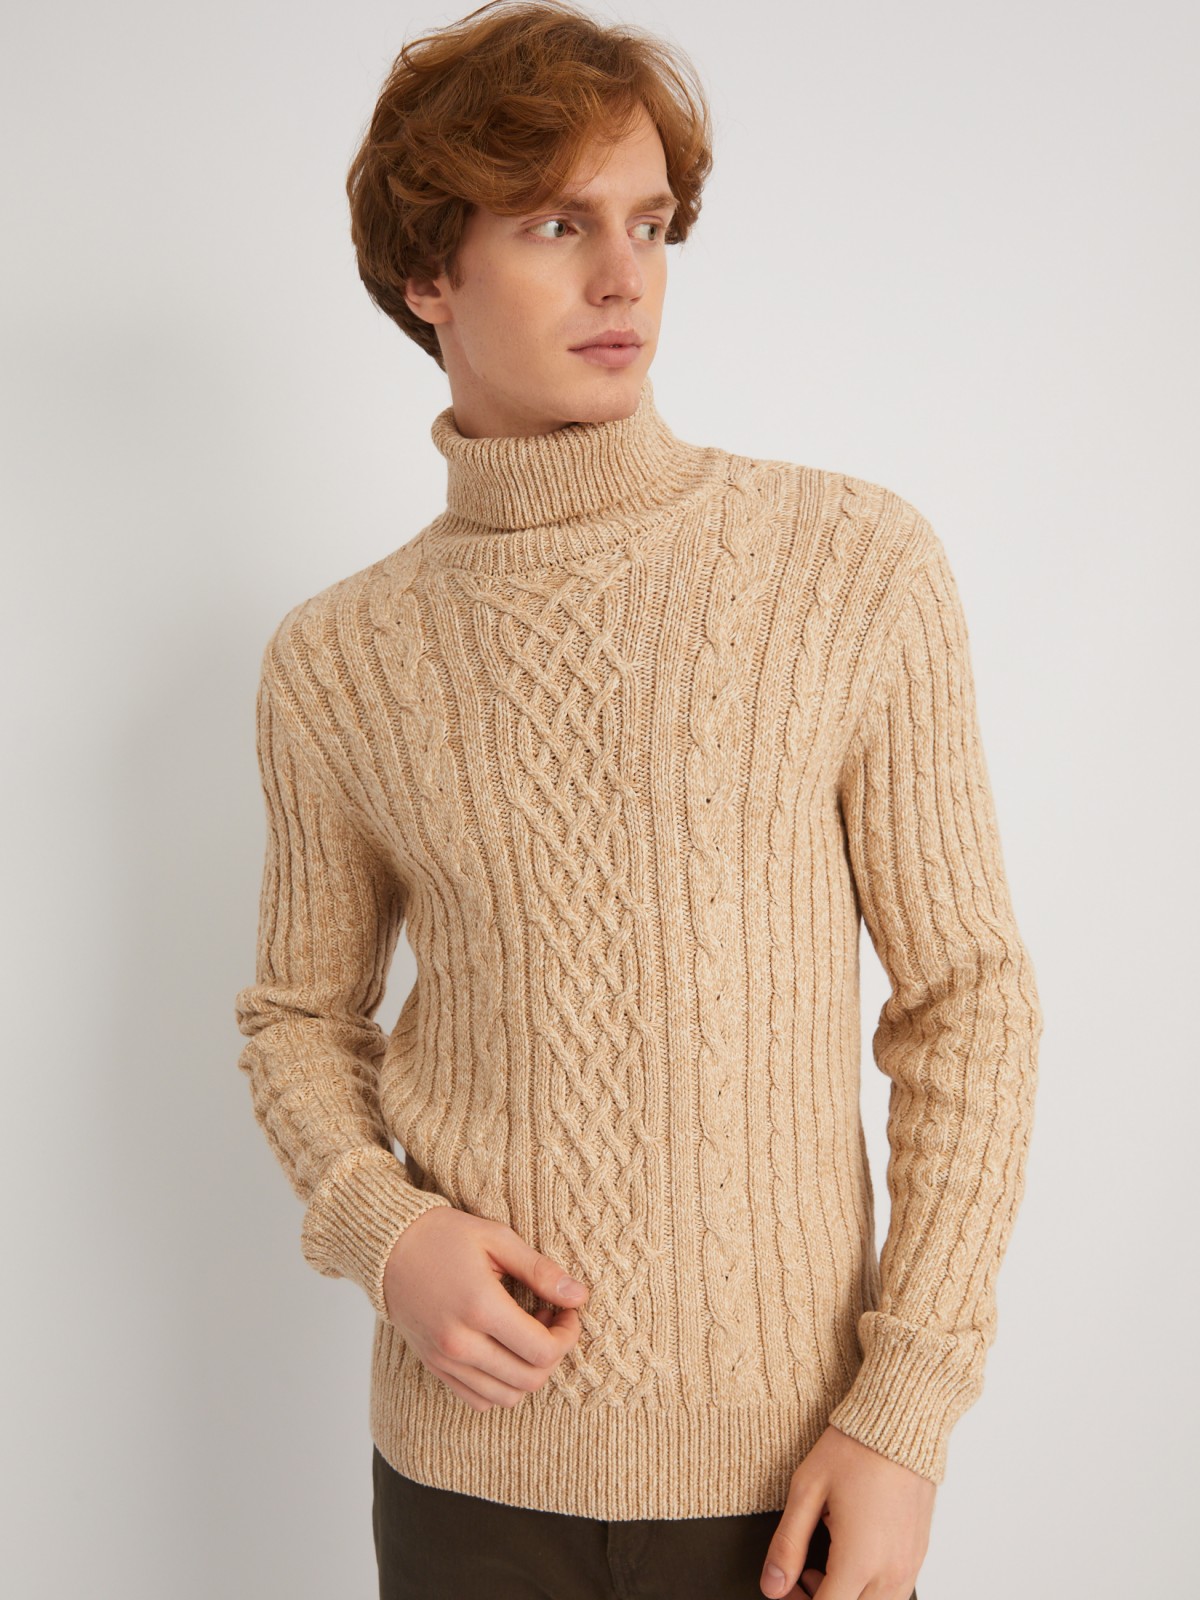 Вязаный свитер с фактурным узором косы zolla 013446165093, цвет коричневый, размер S - фото 3